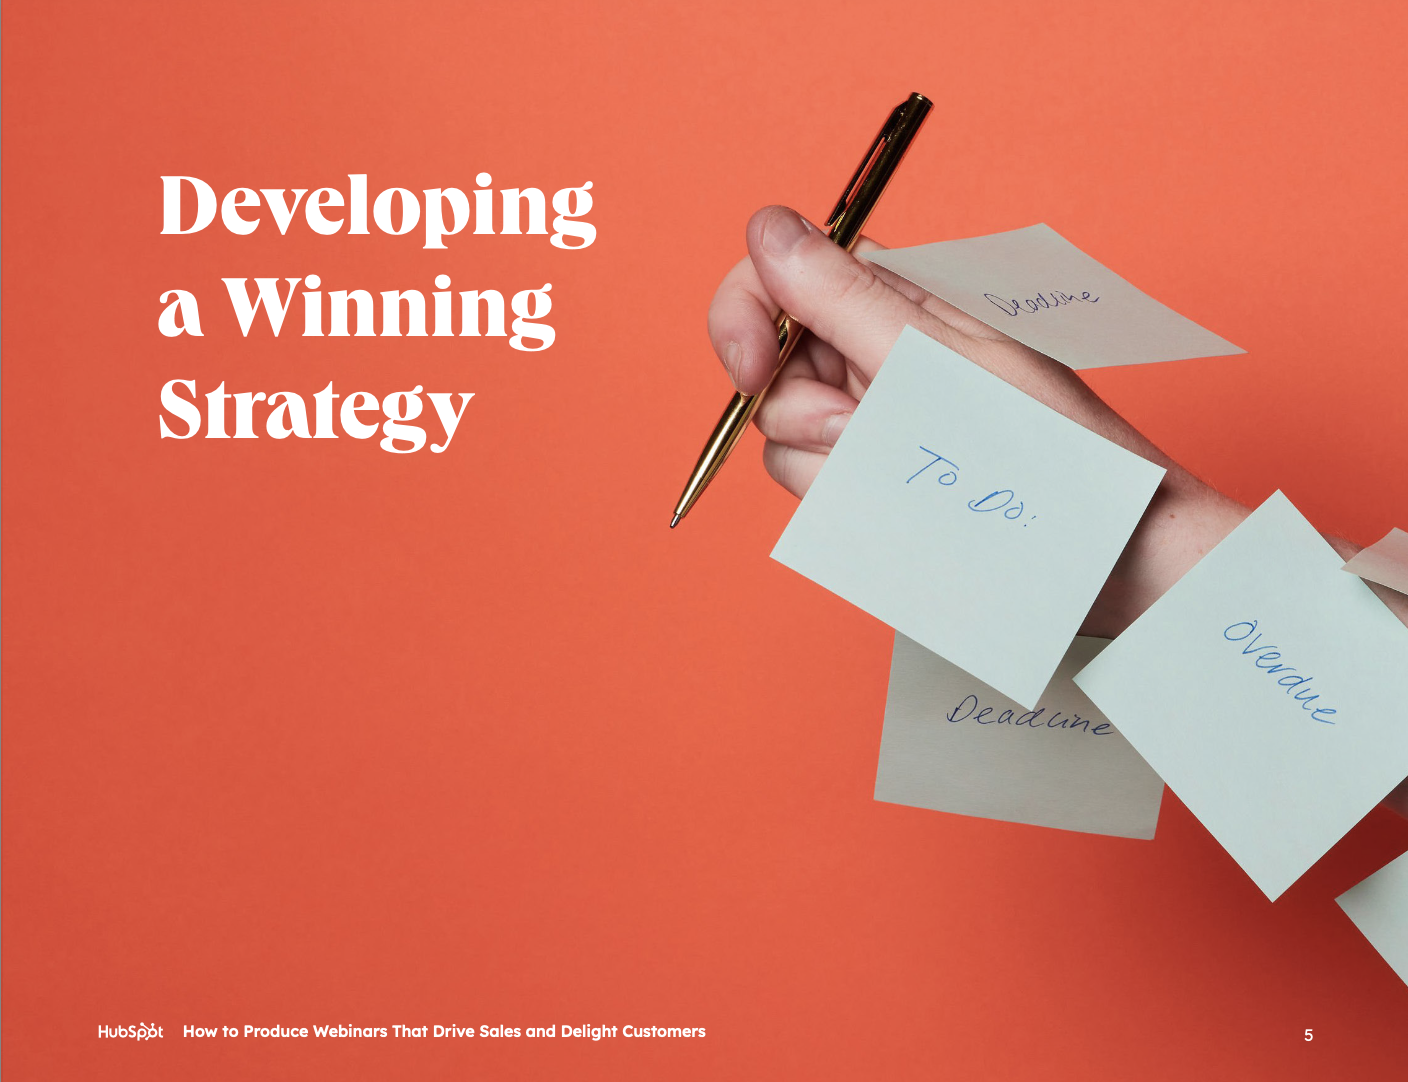 develop-winning-strategy-page-5-webinar-ebook